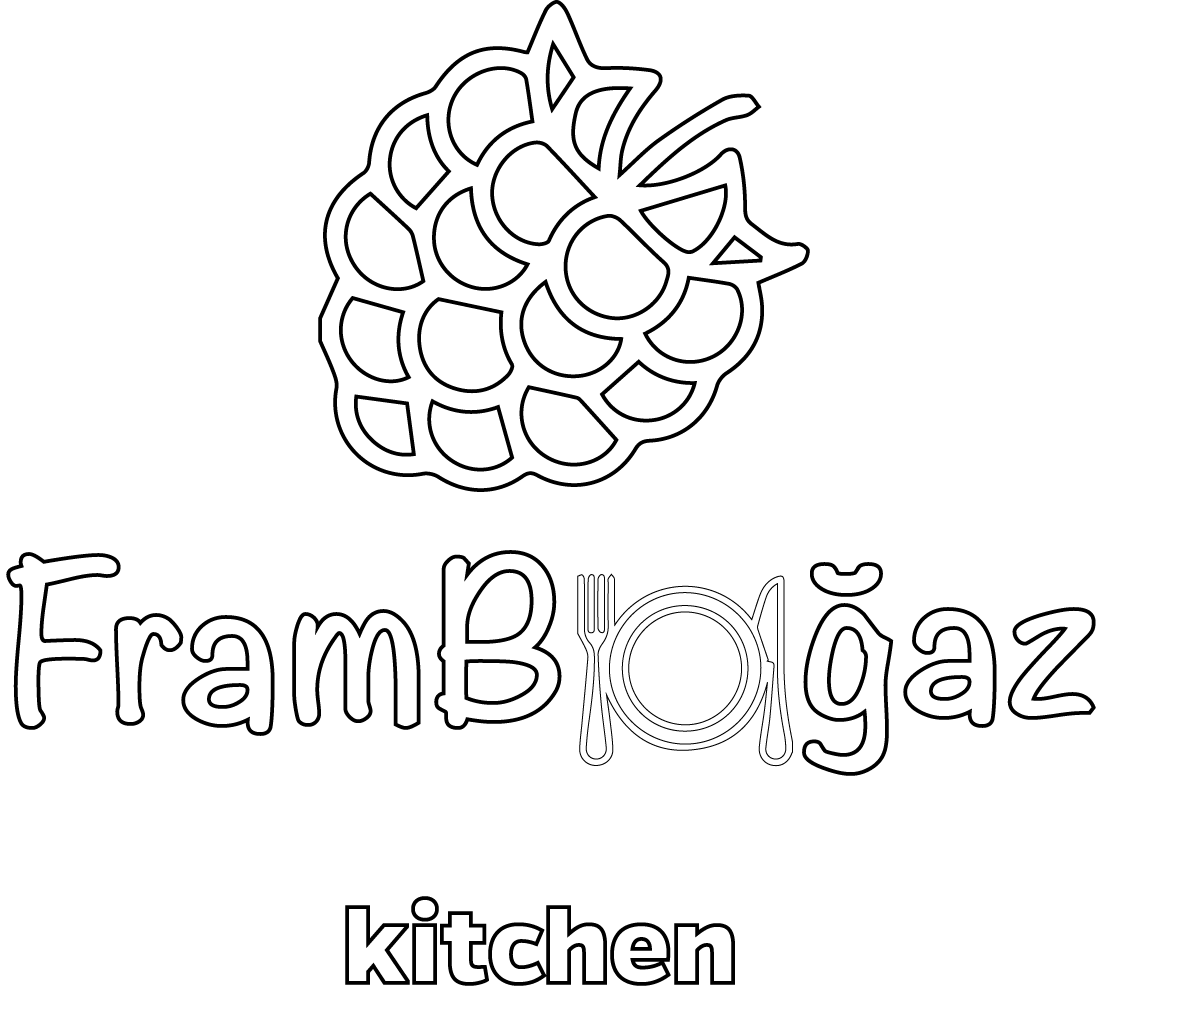 Frambogaz Logo White